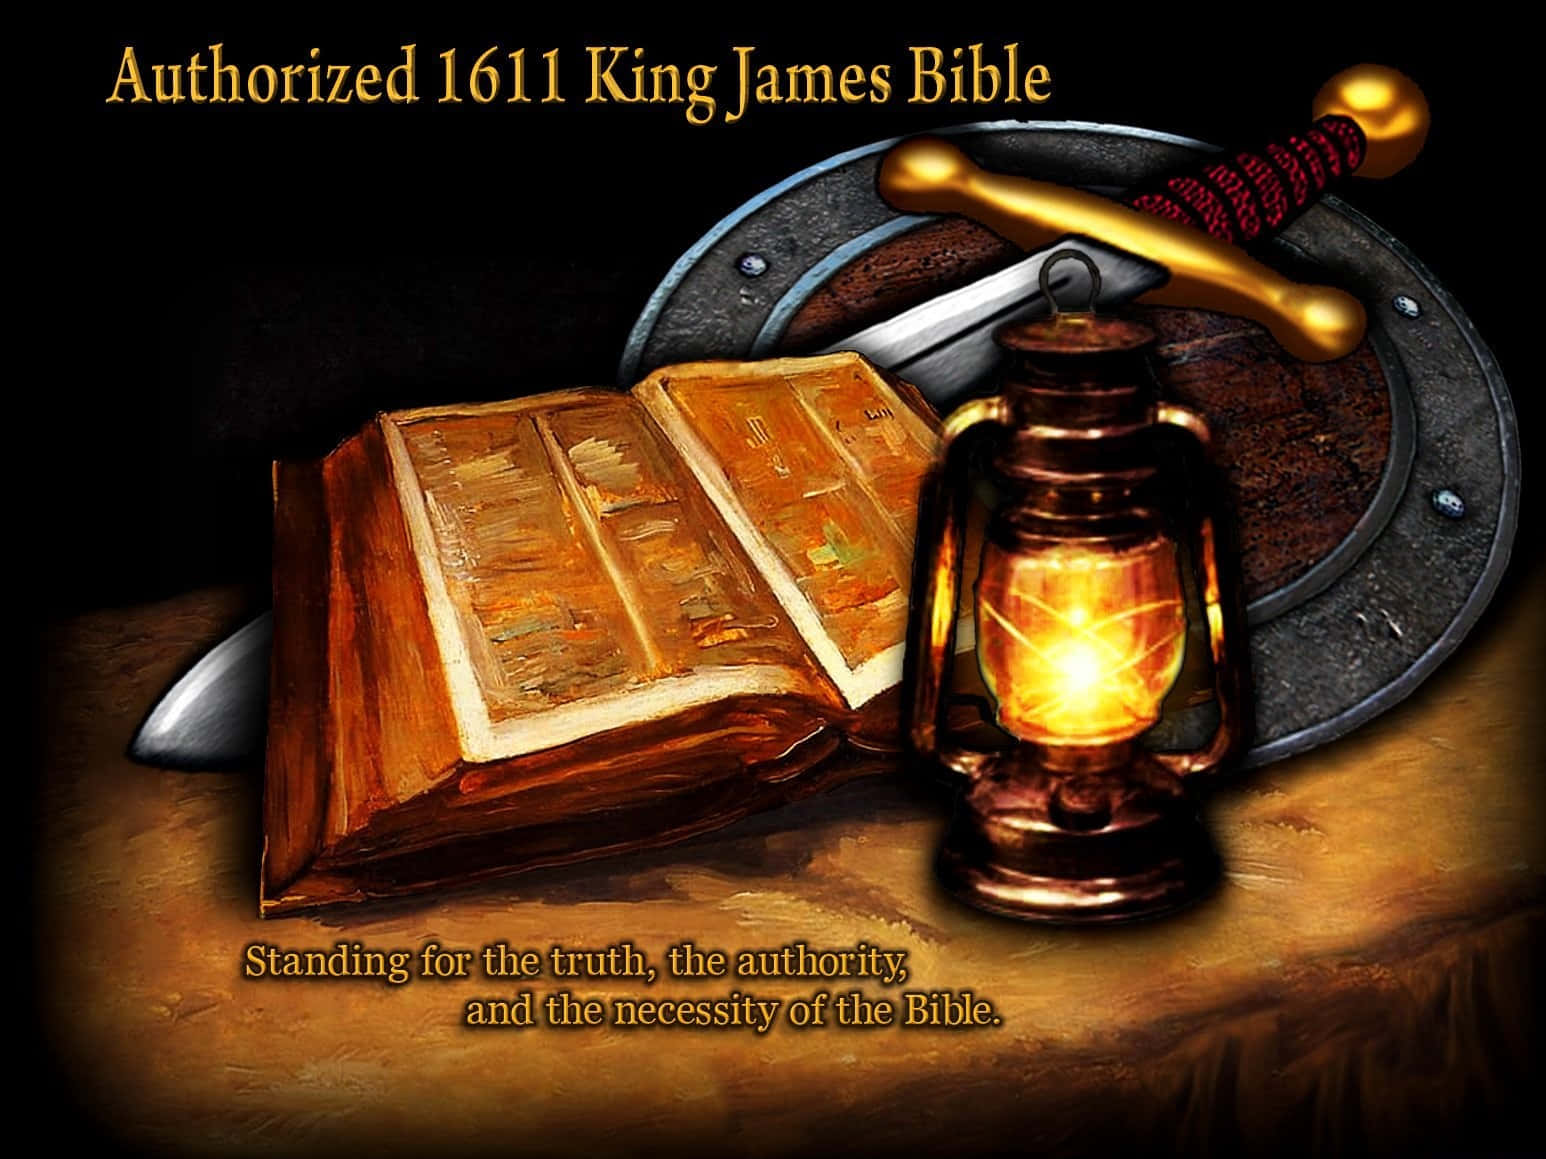 Dieking James Bibel, Die Beliebteste Bibel In Englischer Sprache. Wallpaper